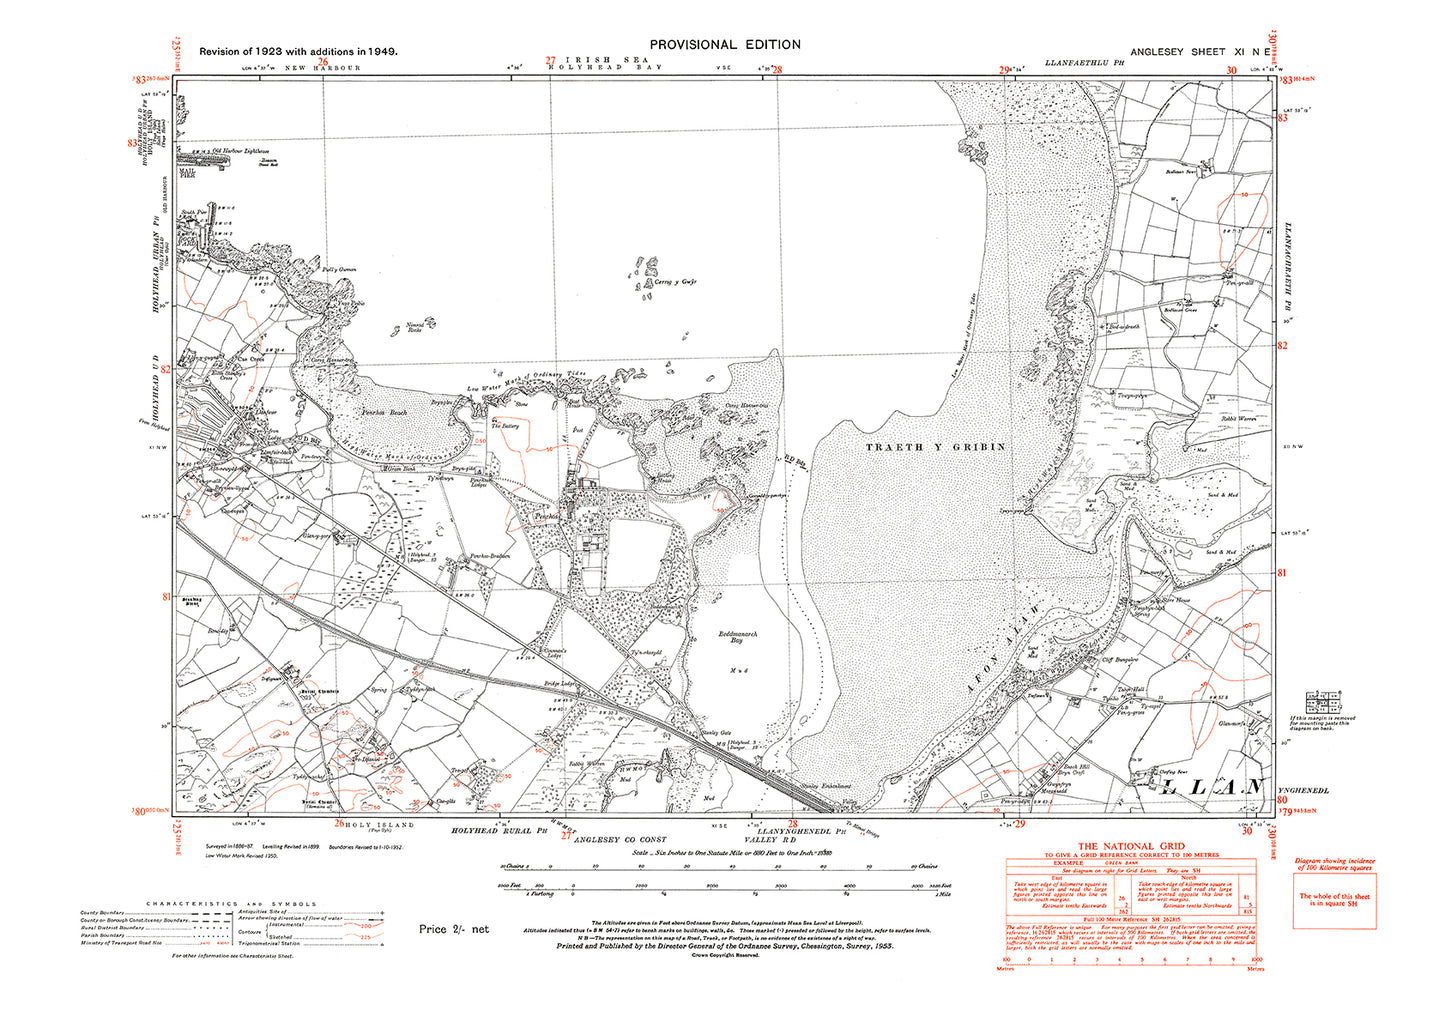 Traeth Y Gribin, Penrhos Beach, old map Anglesey 1949: 11NE